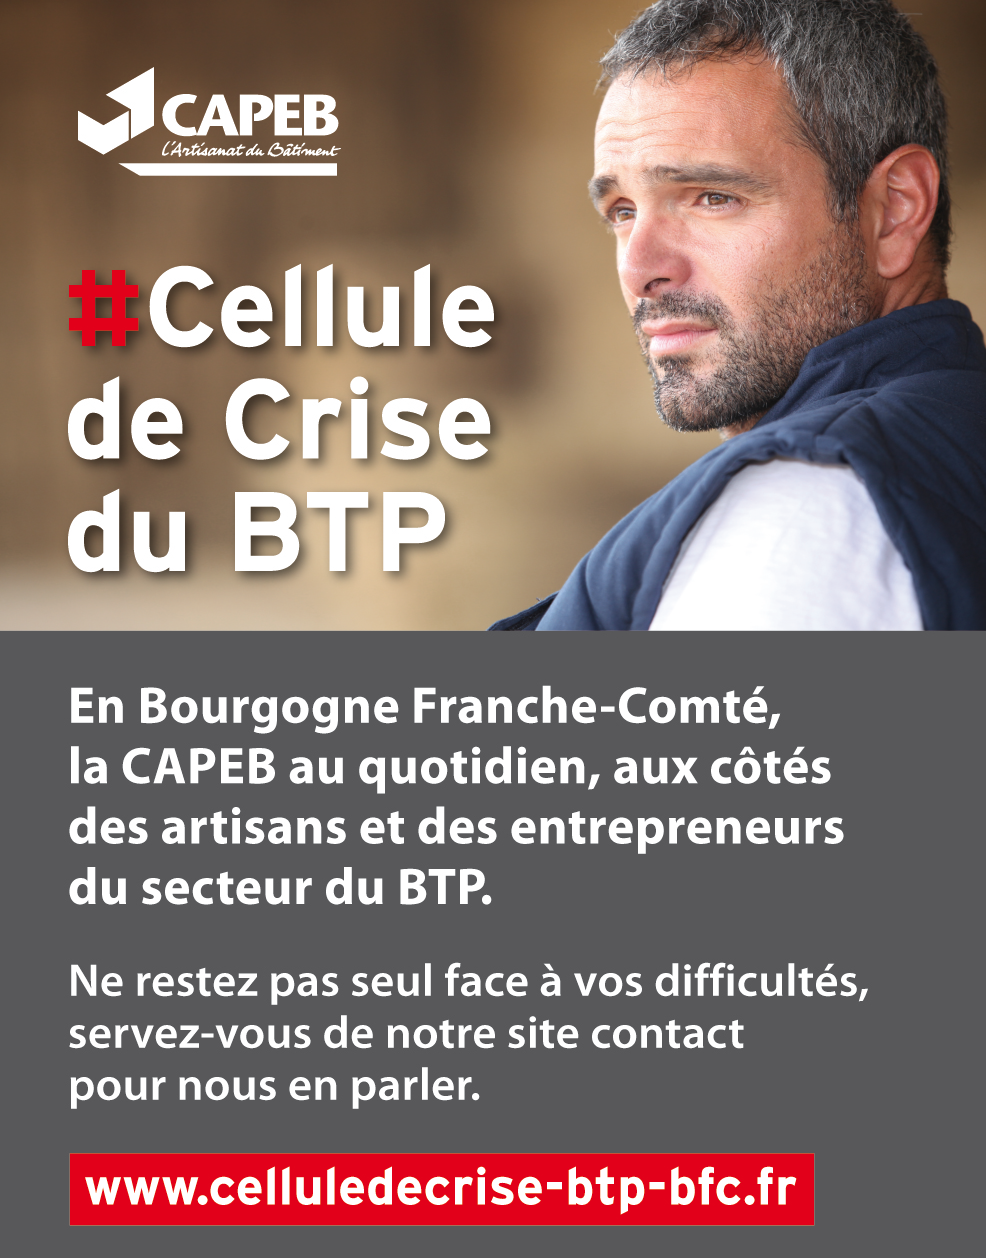 capeb71-cellule-crise-btp